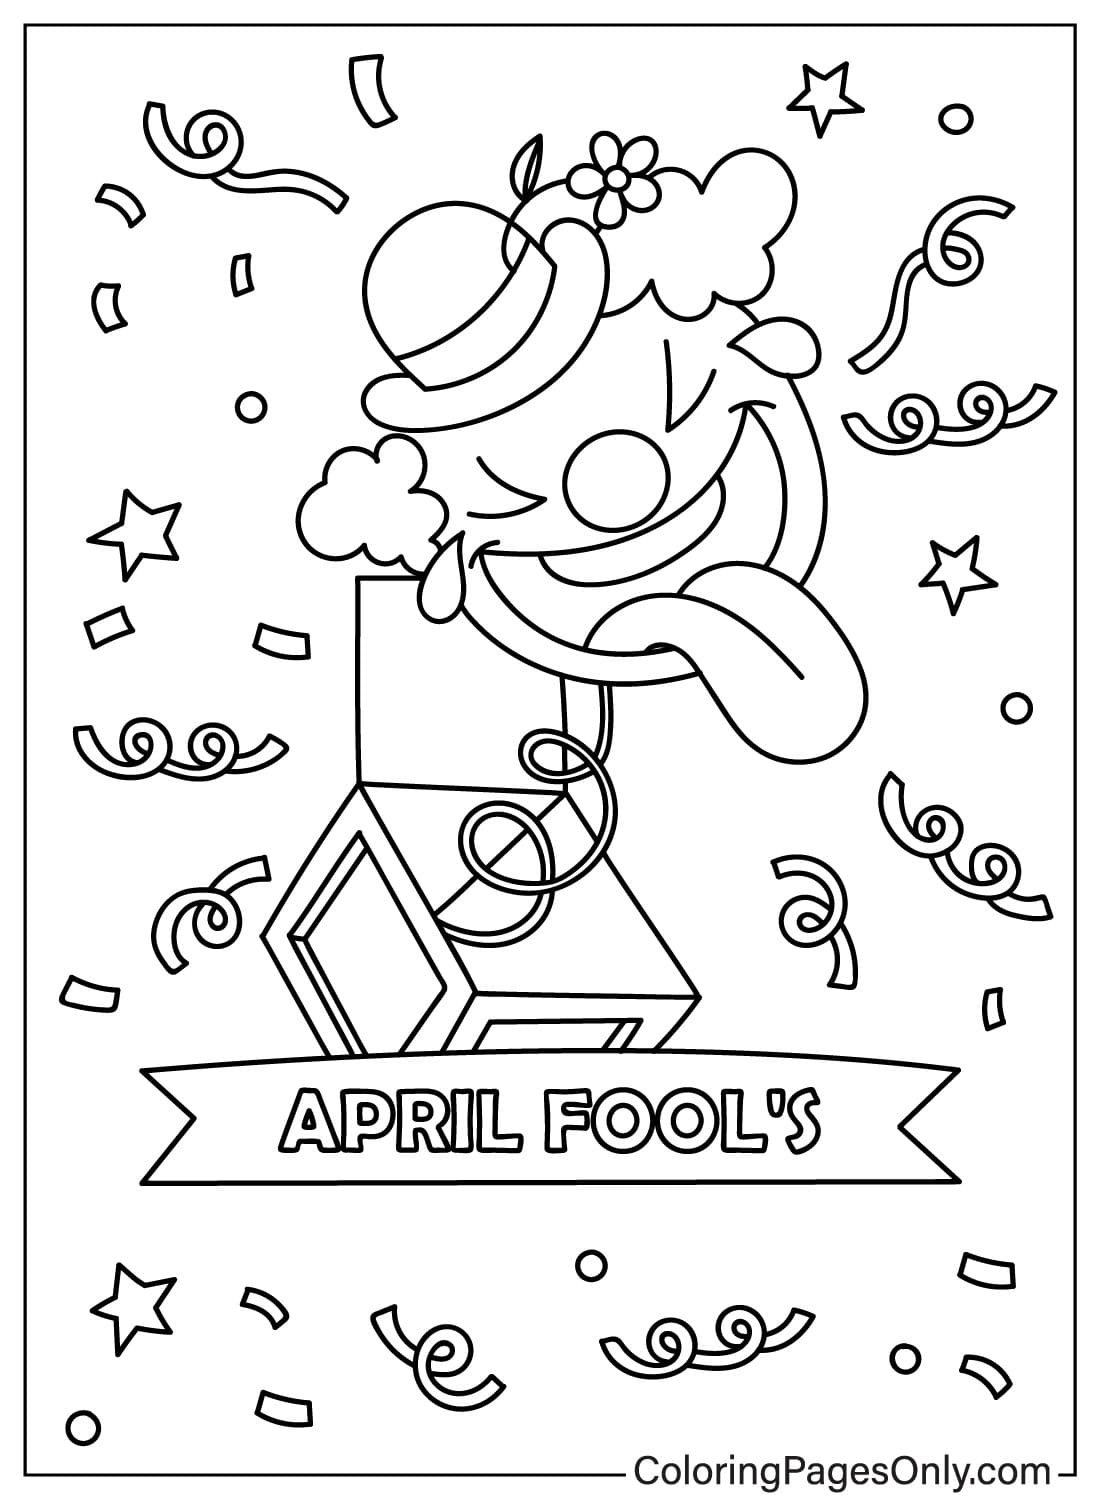 April Fool's Day om te kleuren vanaf April Fool's Day